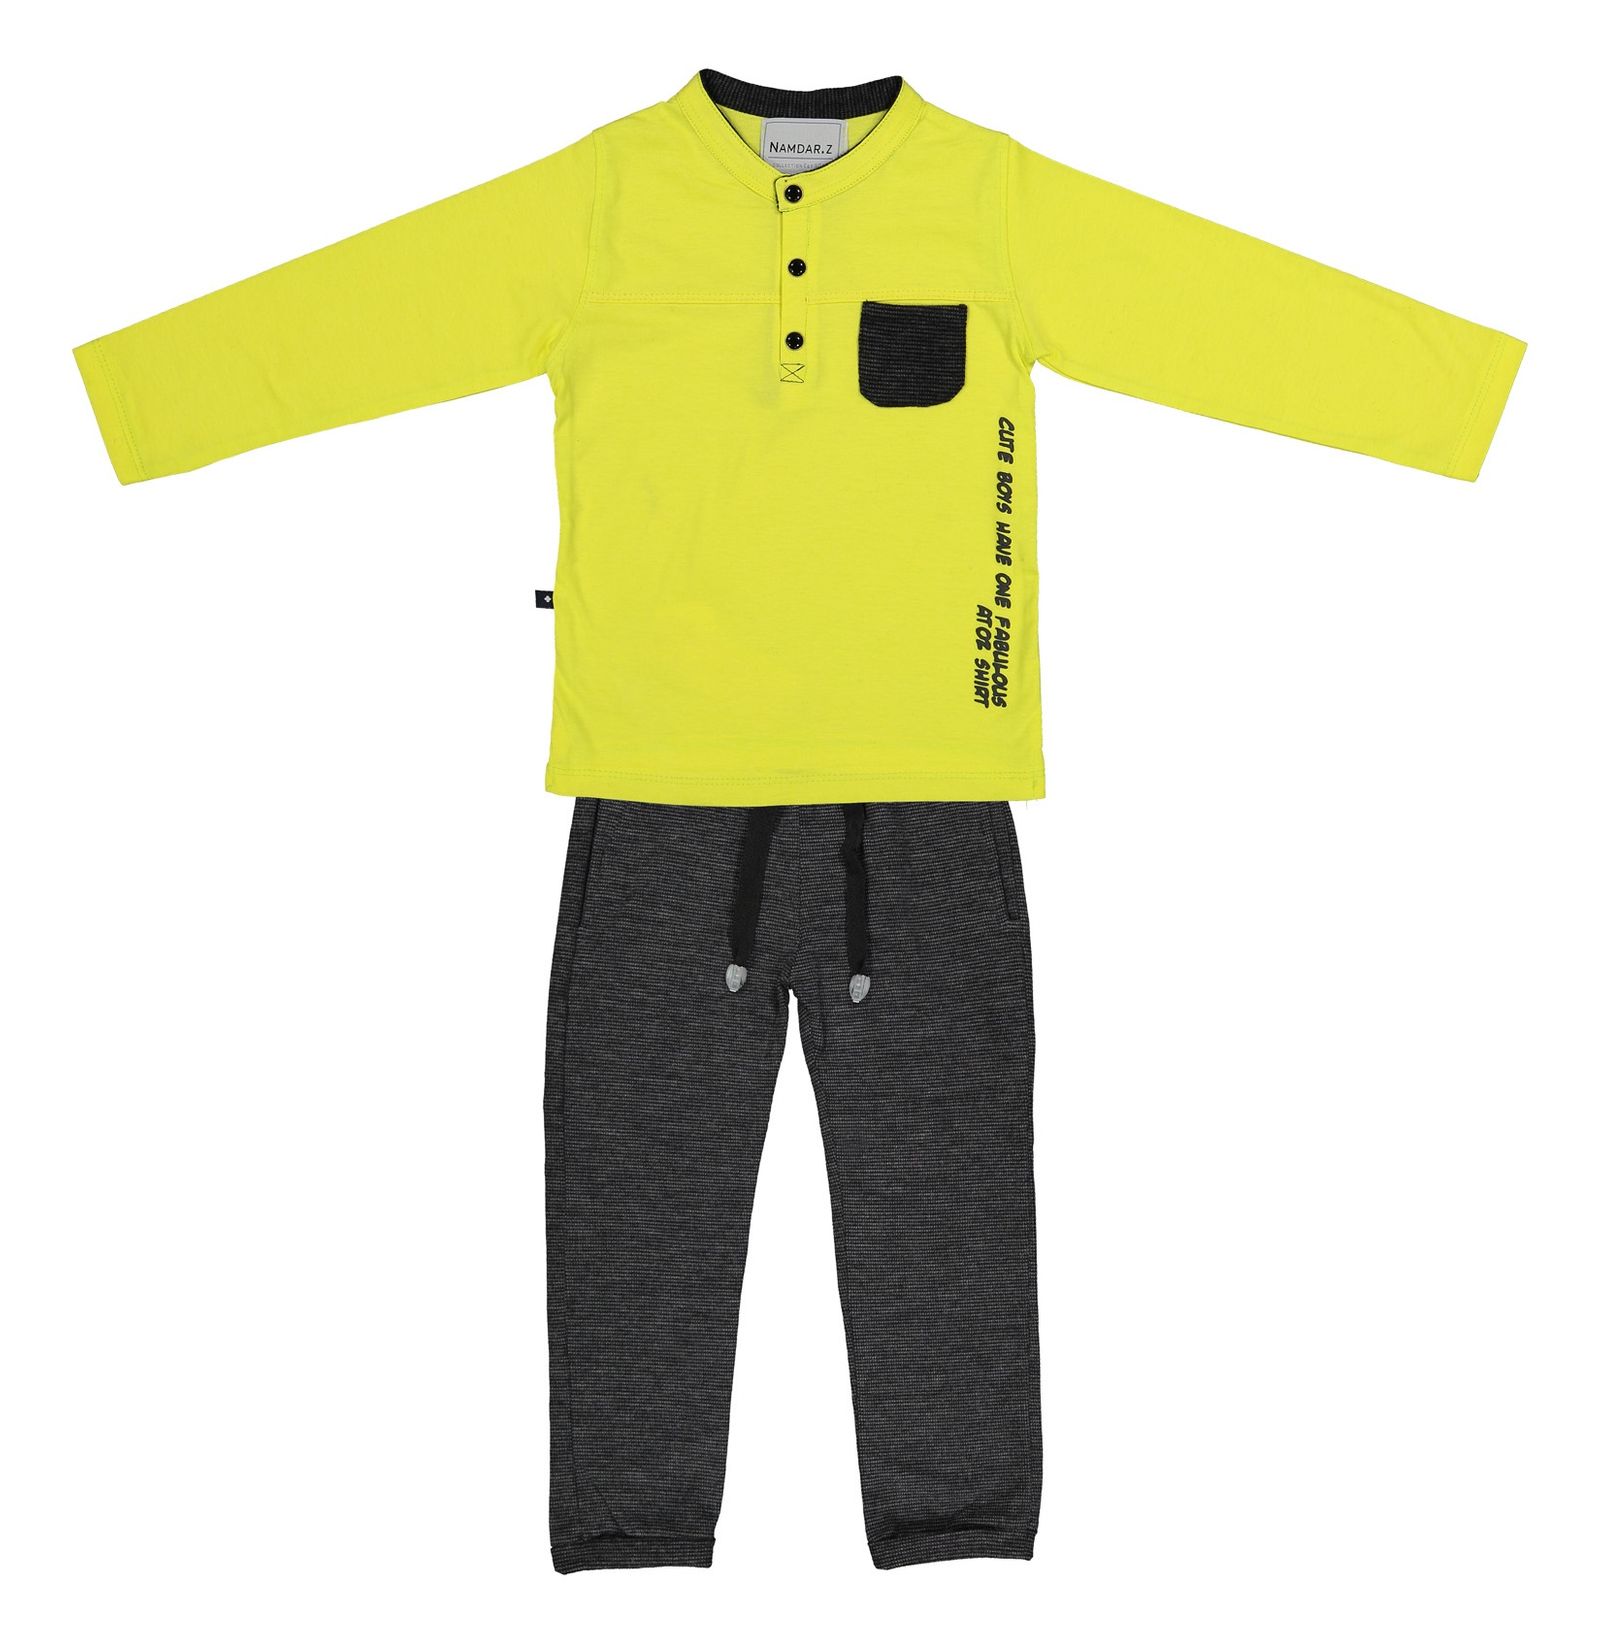 ست تی شرت و شلوار پسرانه نامدارز مدل 2021103-19 - زرد - 2